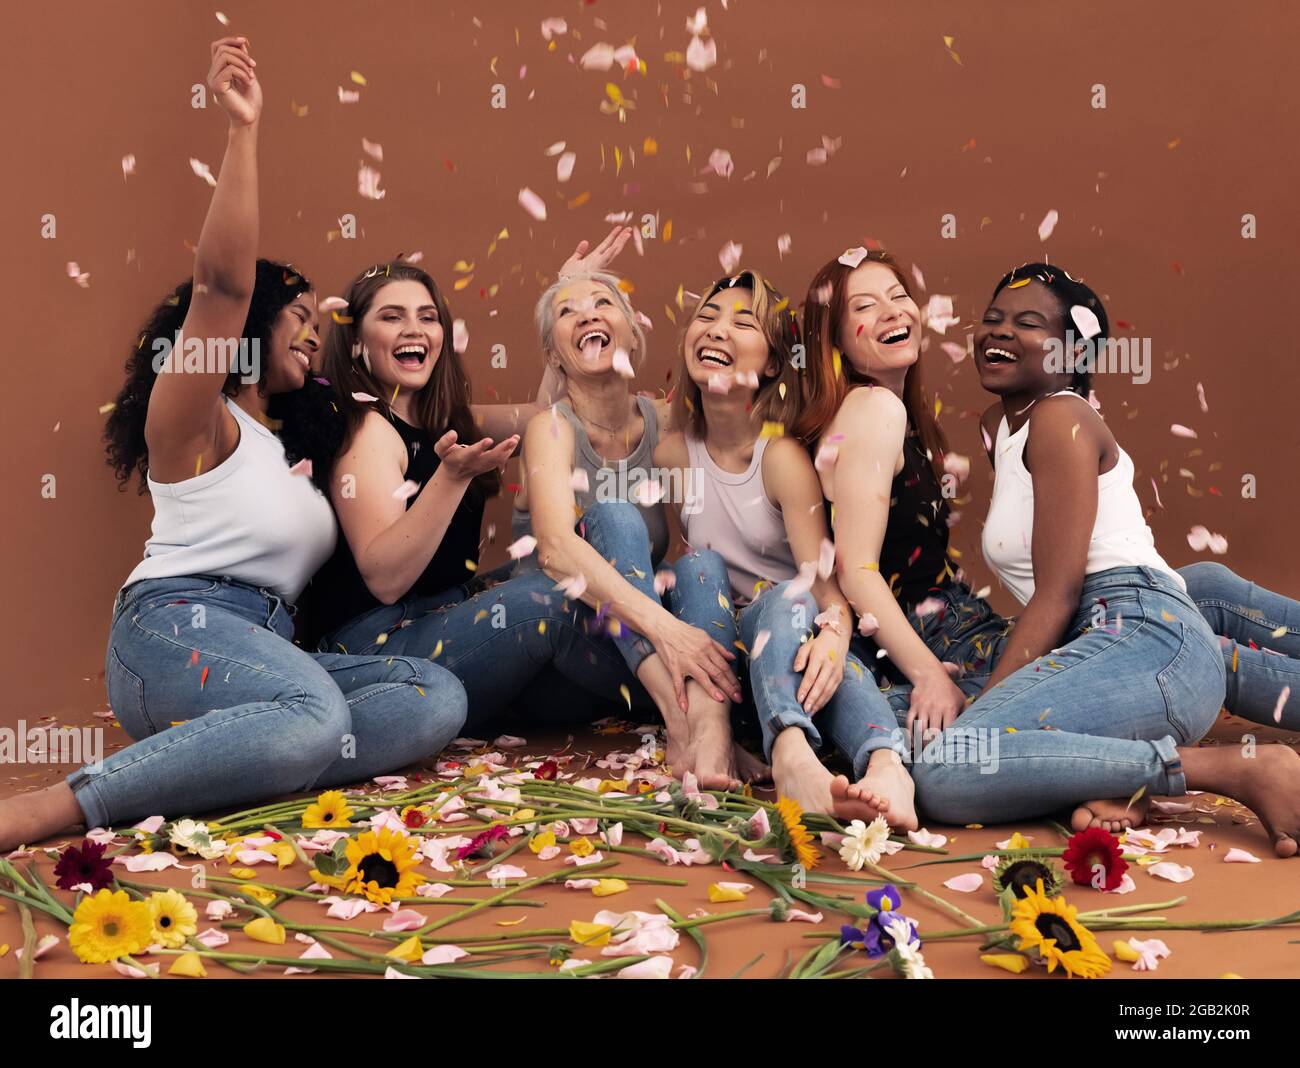 Gruppo multietnico di donne felici sotto i petali che cadono Foto Stock